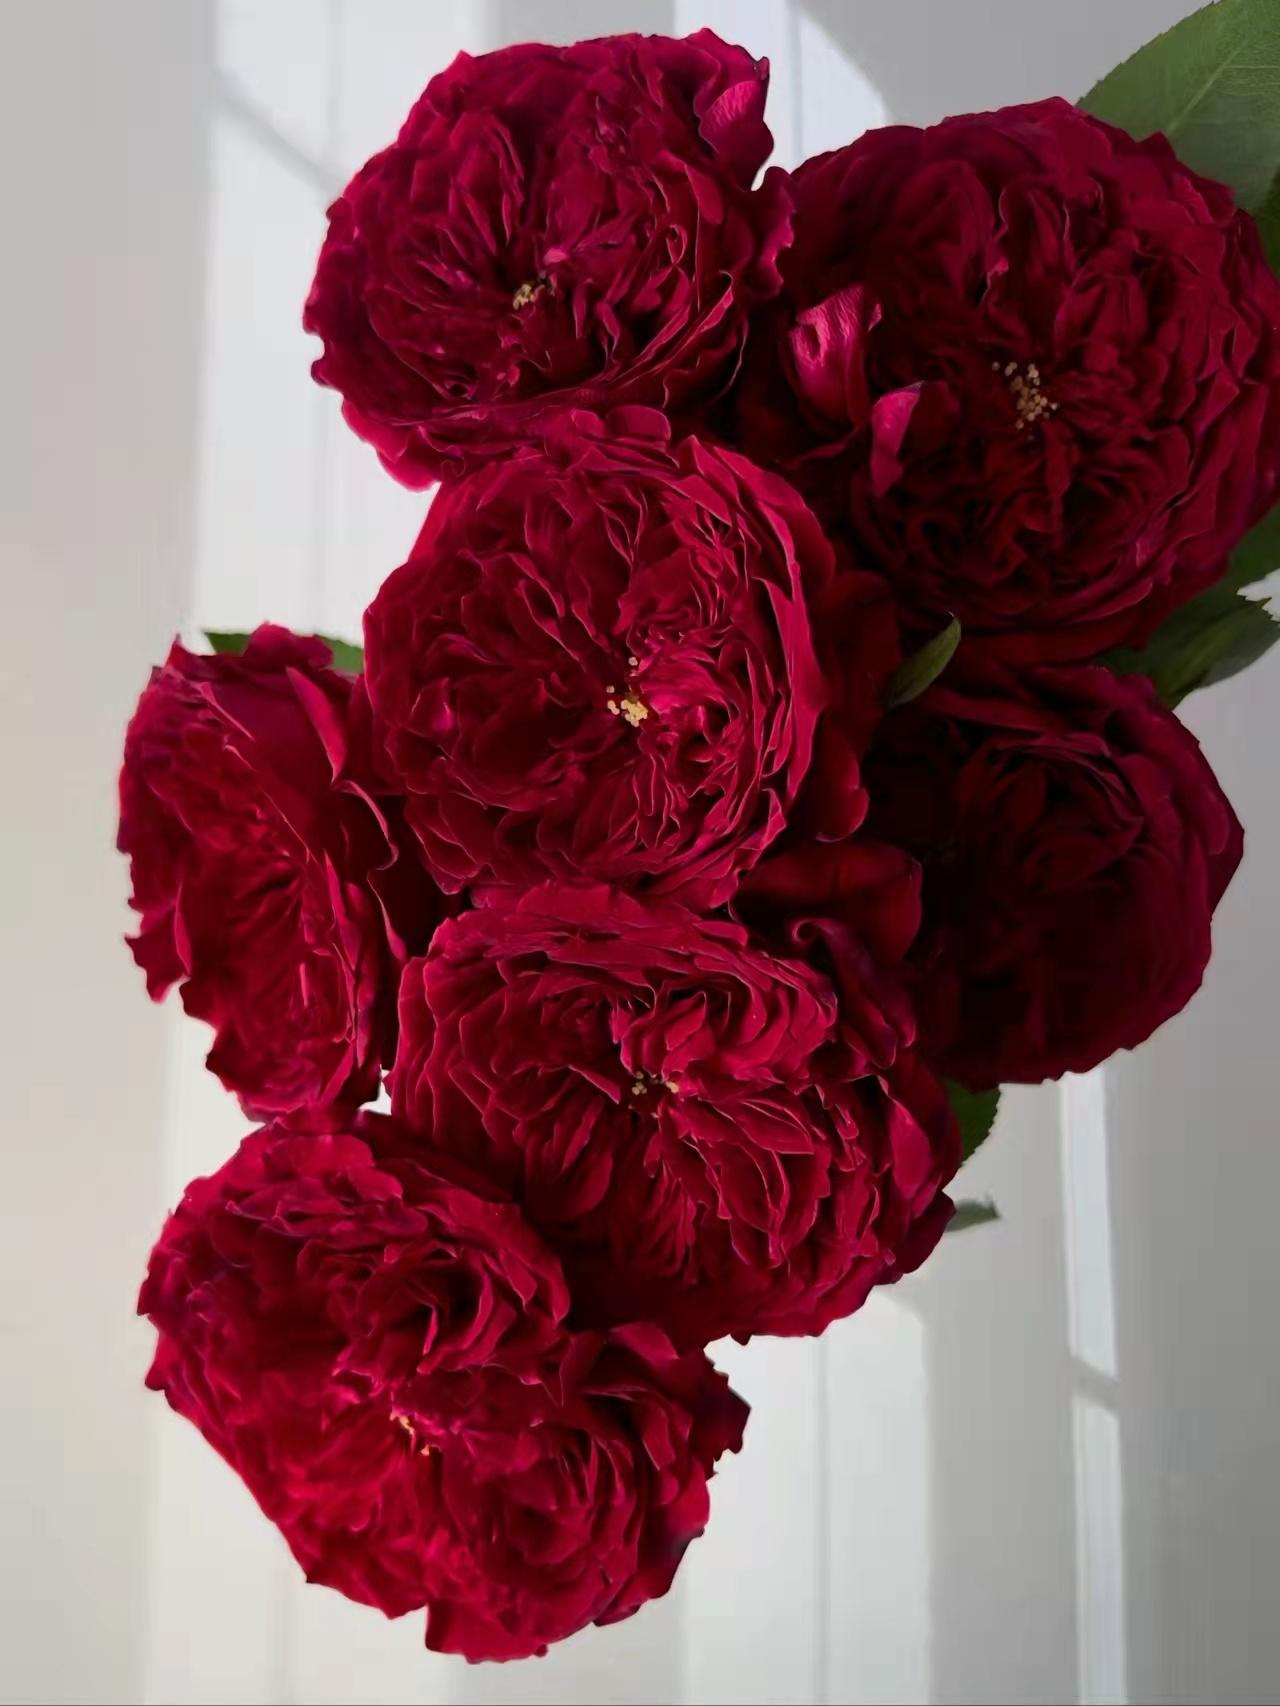 34 | 大卫奥斯汀苔丝玫瑰,红色系贵族色彩!